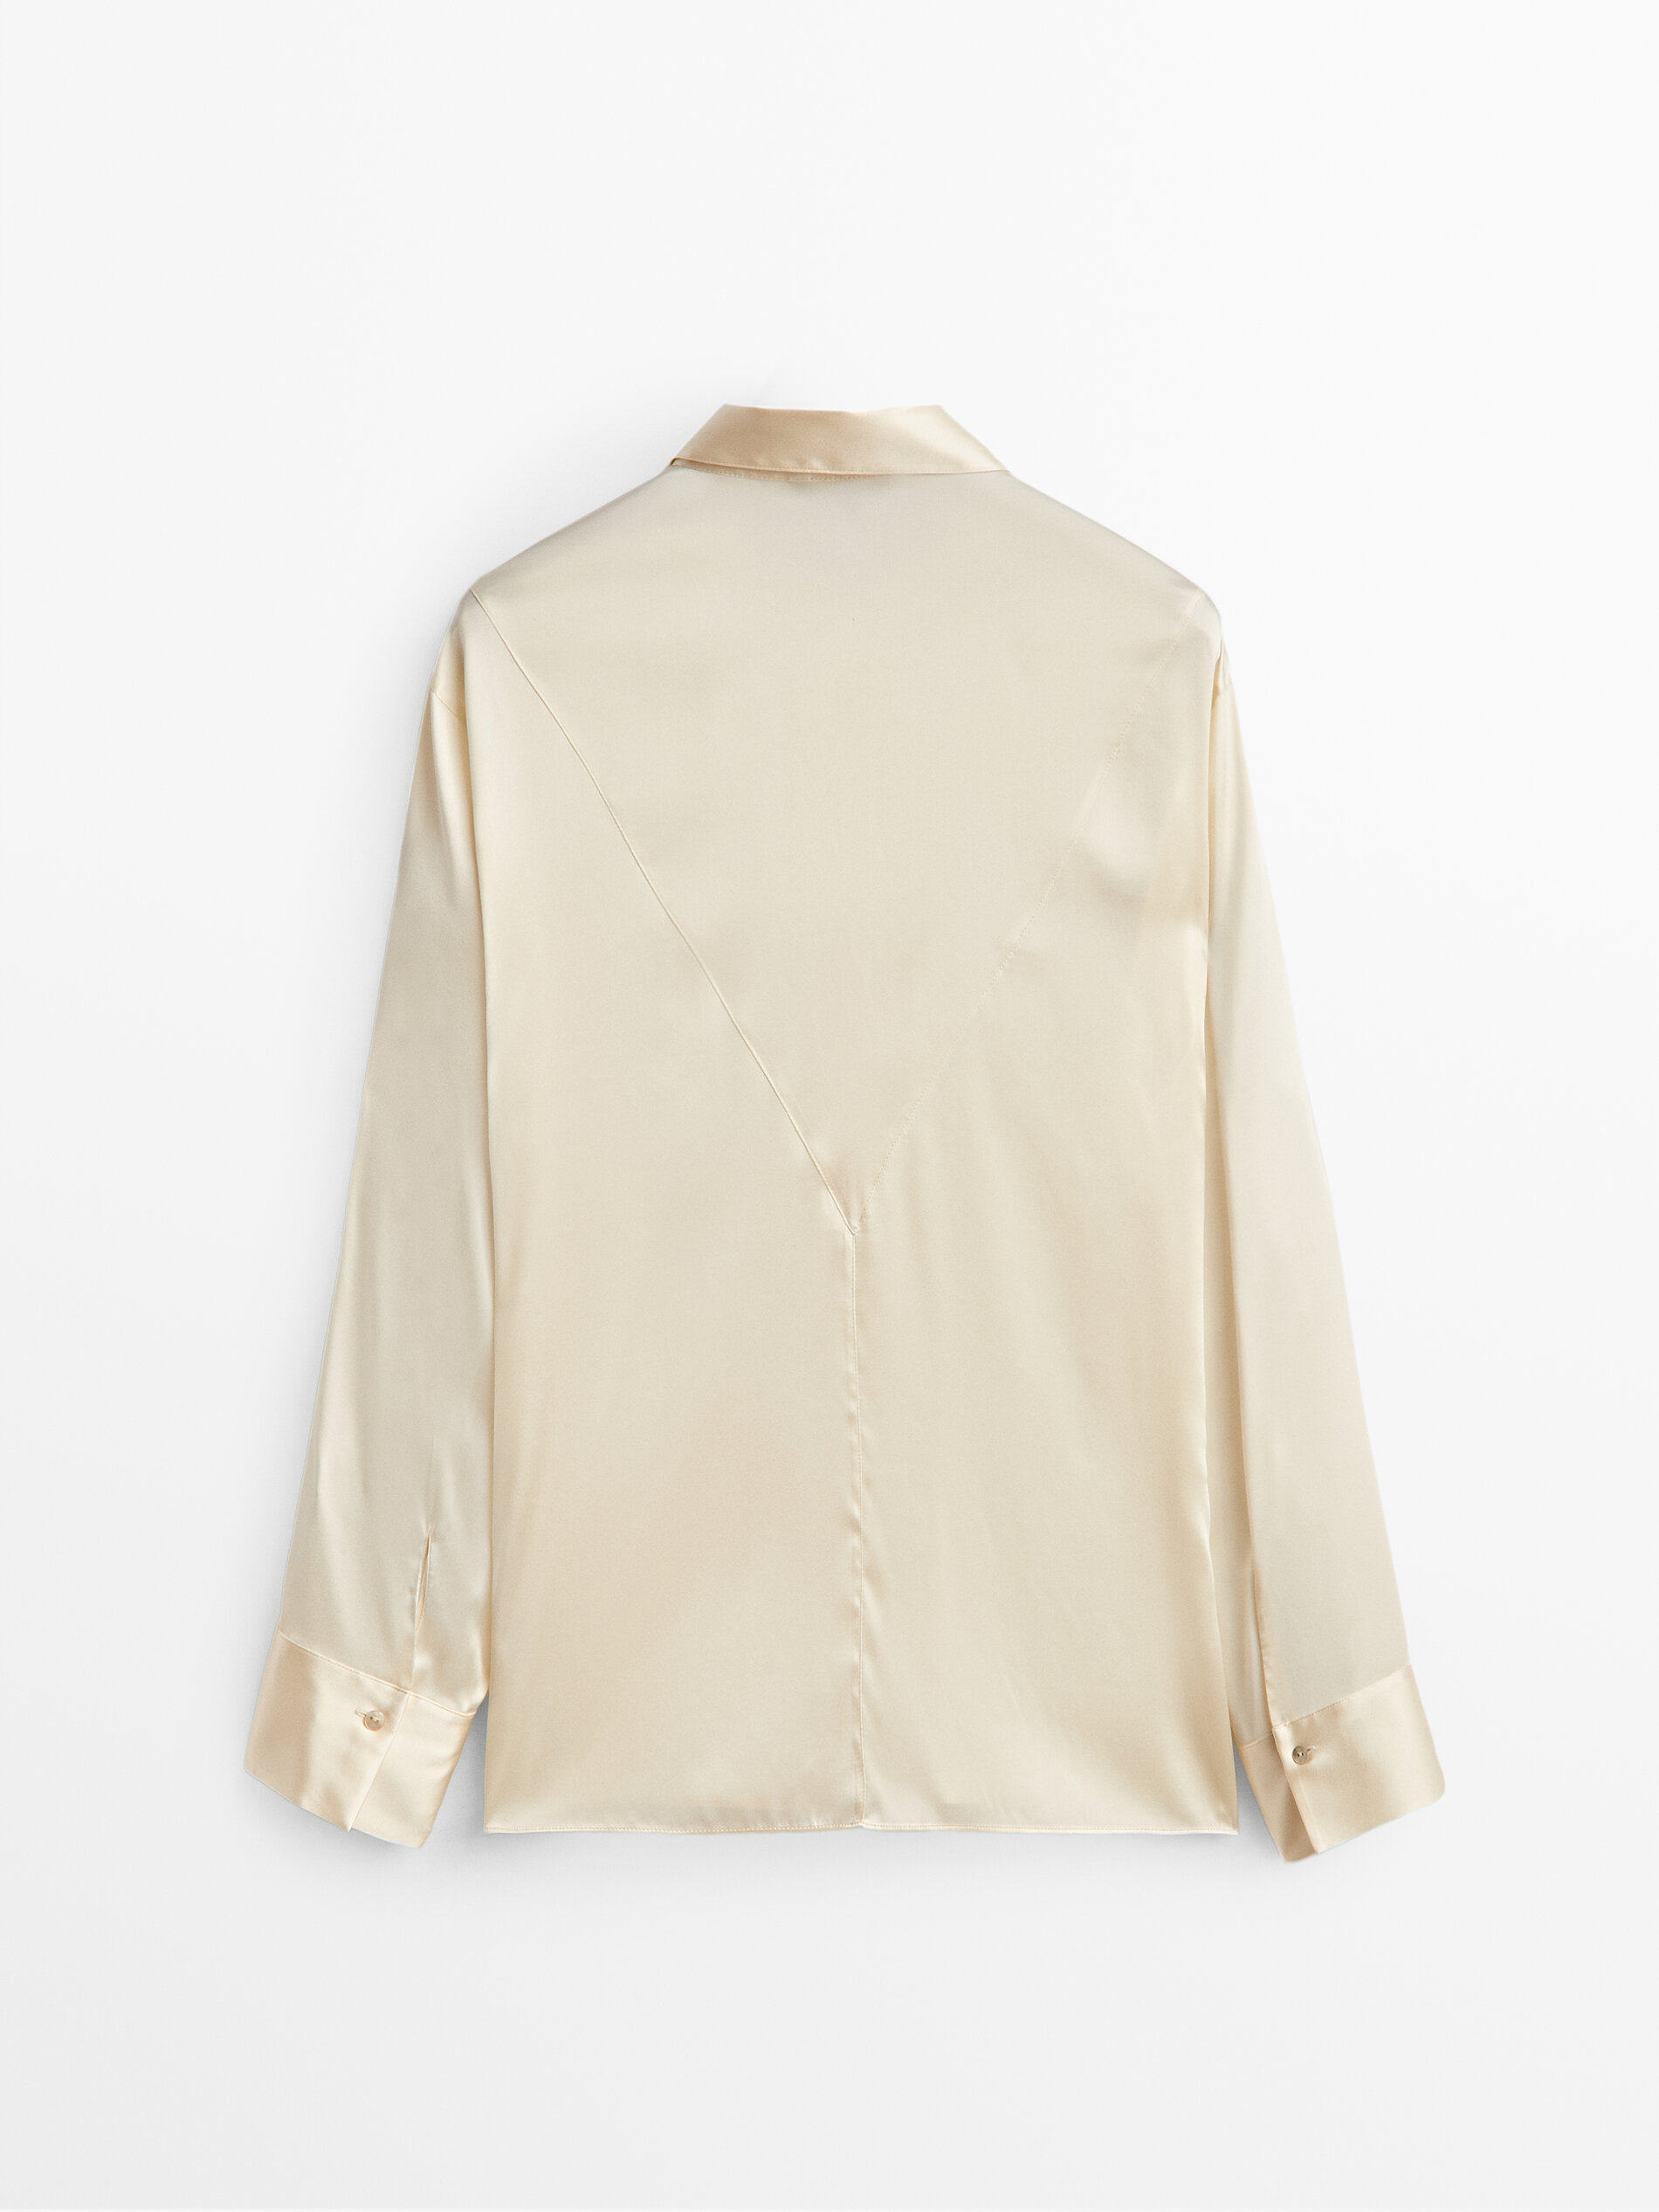 Massimo Dutti Fitted Silk Shirt - Big Apple Buddy